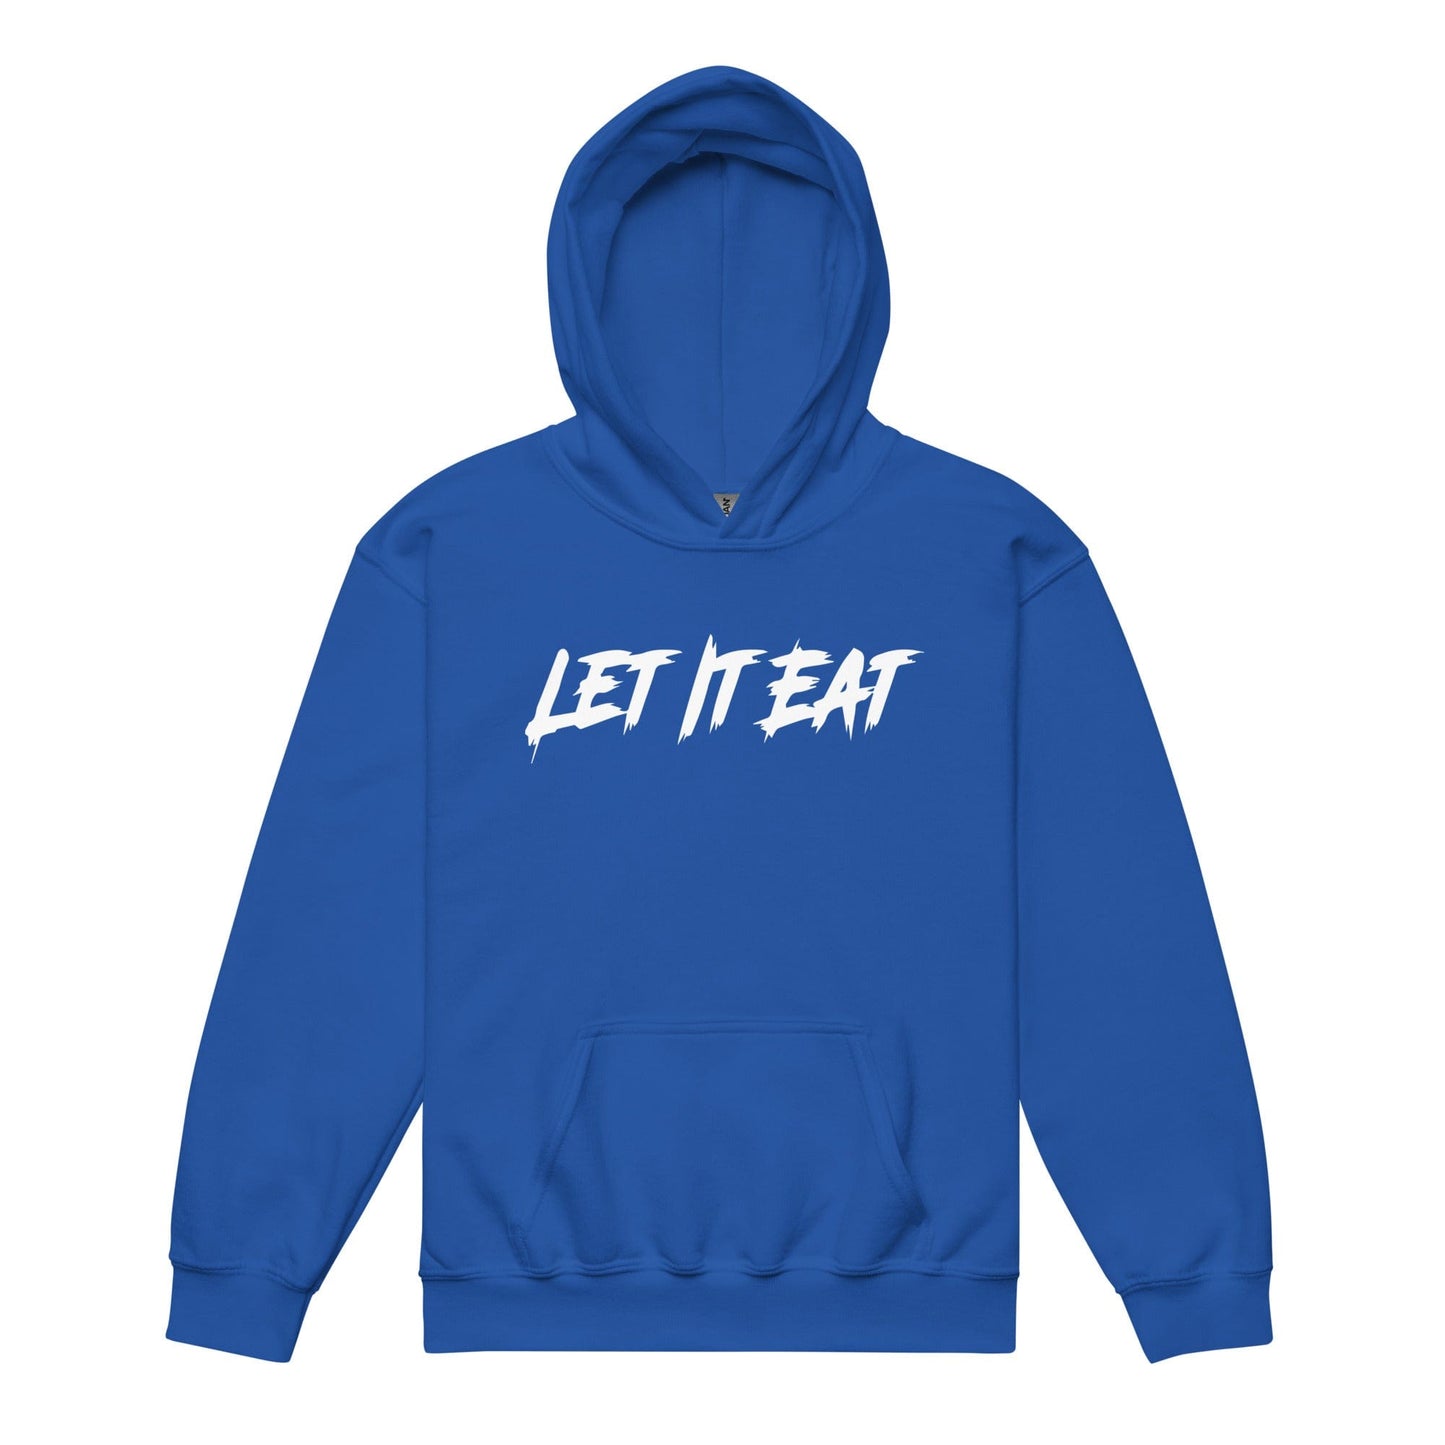 Let it Eat - Youth Hoodie